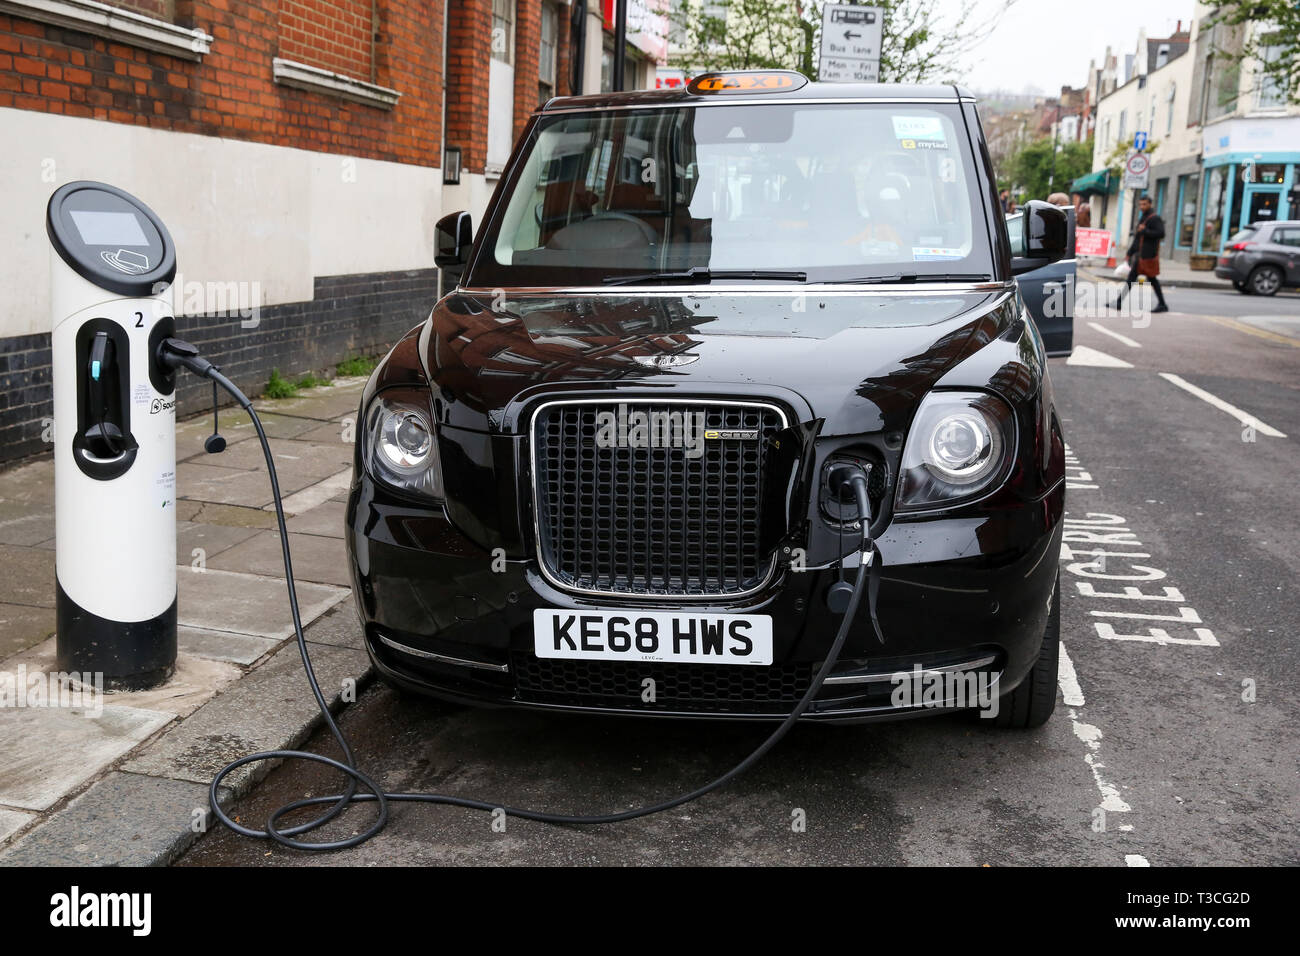 Un taxi londonien noir est vu en utilisant la voiture électrique point de recharge à Londres. Pour améliorer la qualité de l'air, une zone d'émission ultra faible (ULEZ) qui est entrée en vigueur le lundi 8 avril 2019, exploite maintenant 24 heures par jour, 7 jours par semaine, dans la même zone de centre de Londres comme la Congestion Charge. Les conducteurs doivent respecter les normes d'émissions ULEZ ou avoir à payer une redevance quotidienne, en plus de Congestion Charge de conduire à l'intérieur de la zone, des taxis qui sont exemptés de l'Ultra Low Emission Zone. Banque D'Images